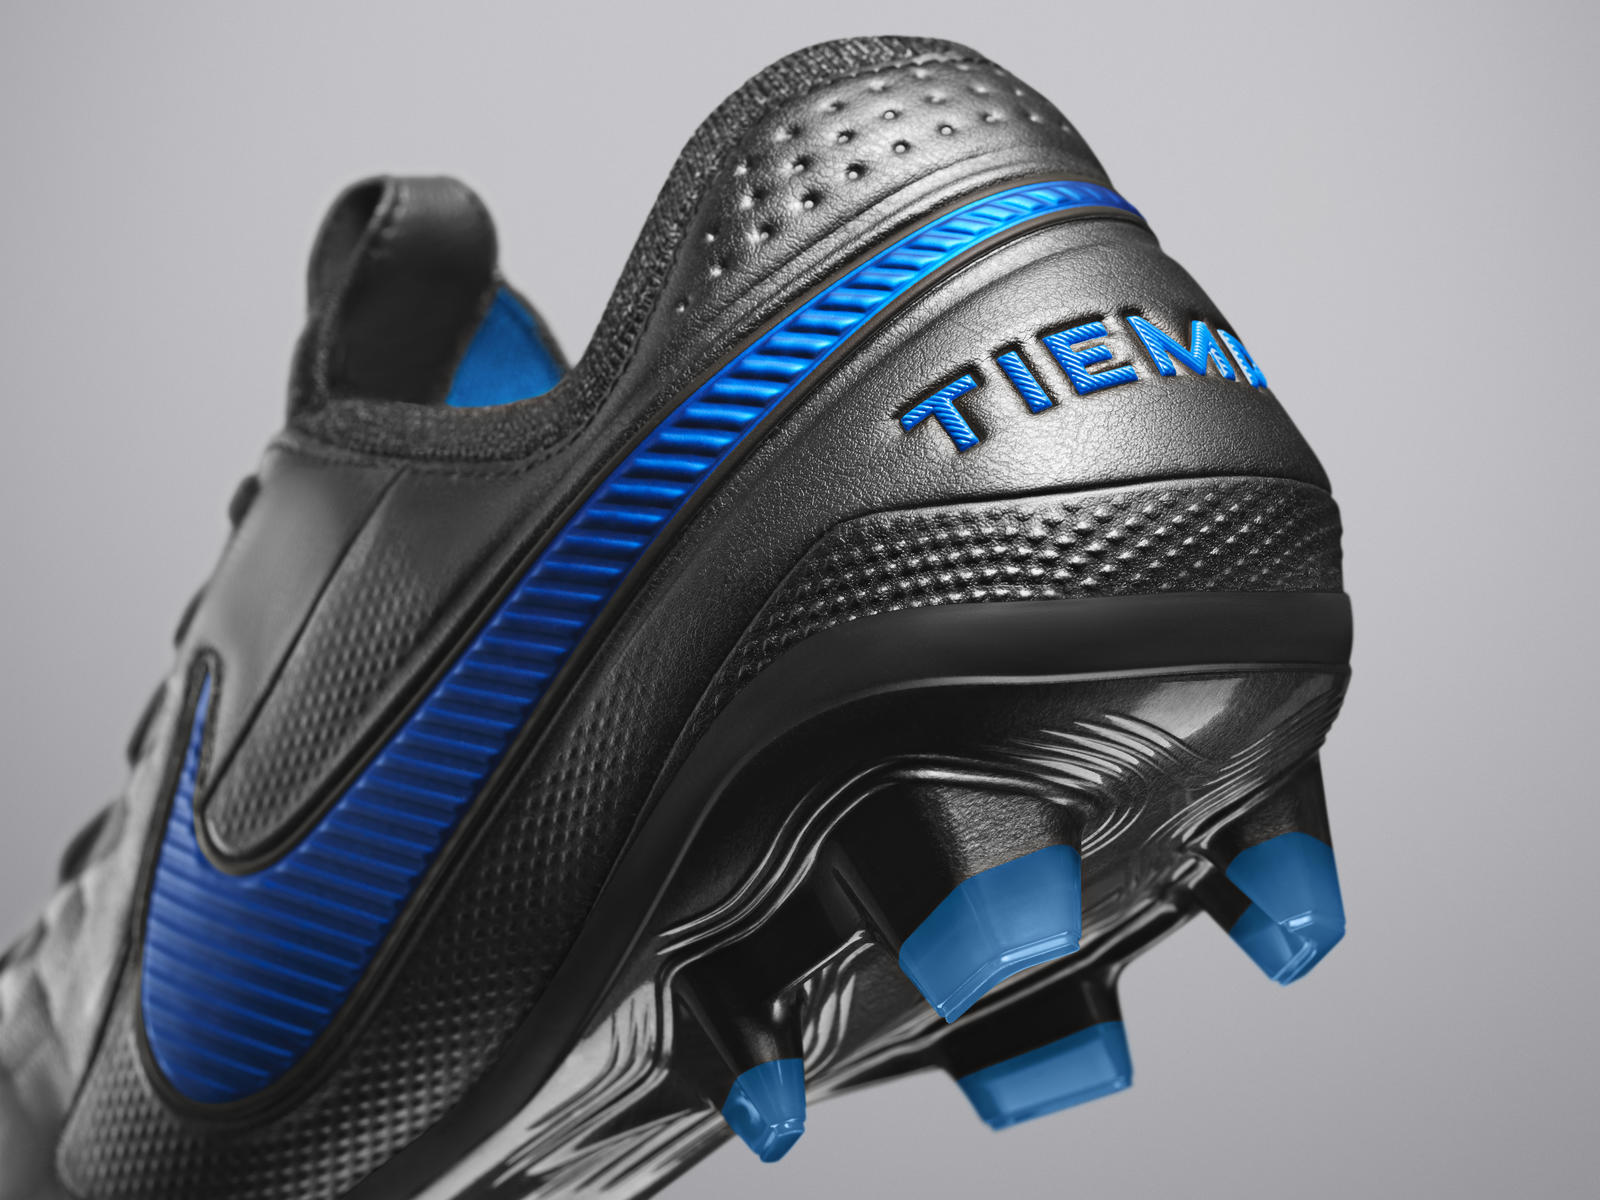 Nuova Nike Tiempo VIII: innovazione e tradizione - Calcio - SportIT